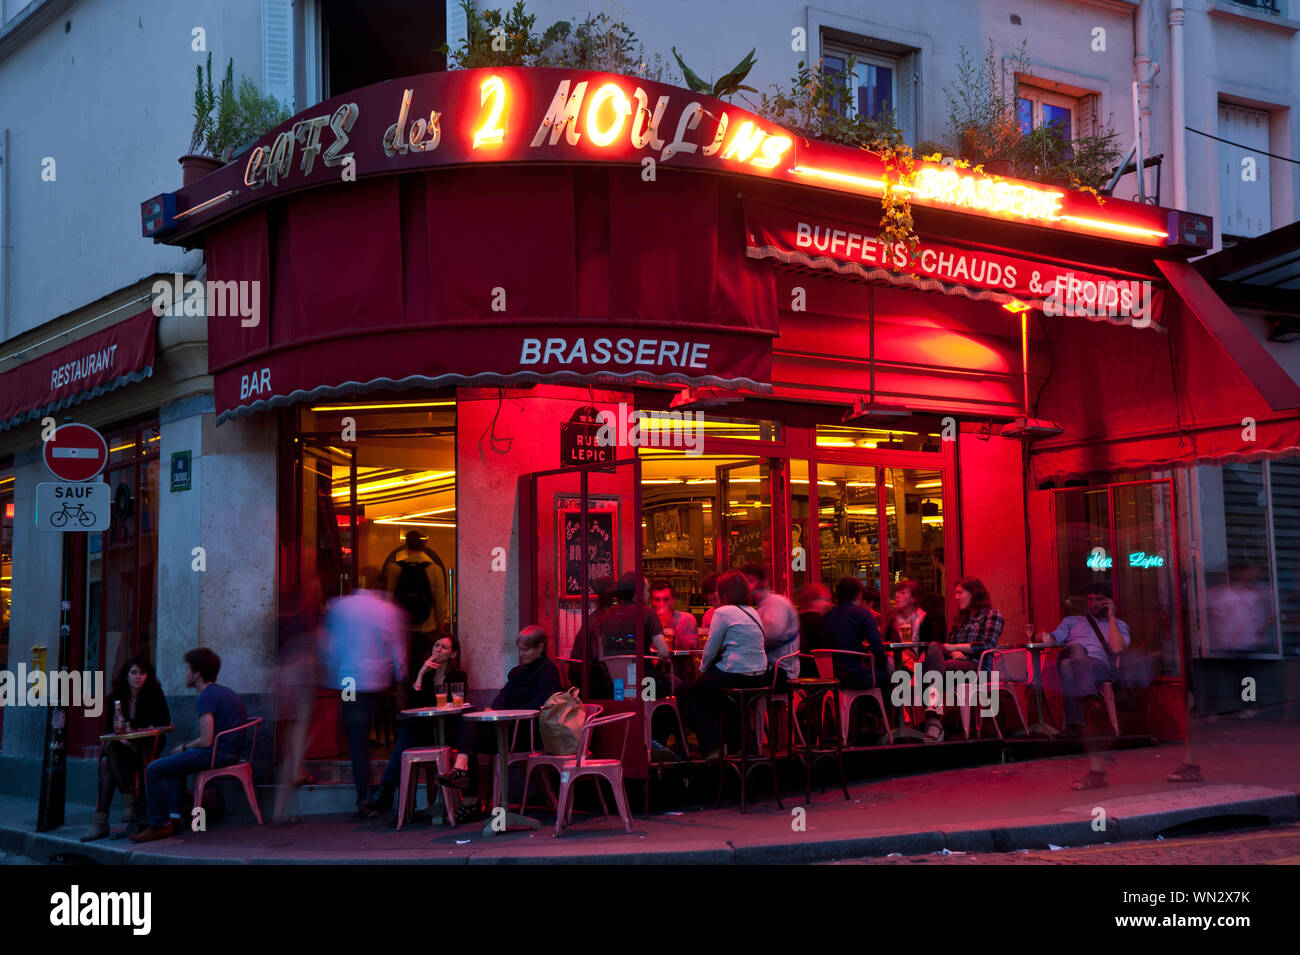 Das Café des 2 Moulins ist ein Café im Pariser Stadtteil Montmartre an der Kreuzung der Rue Lepic und der Rue Cauchois. Es hat seinen Namen von den be Stock Photo